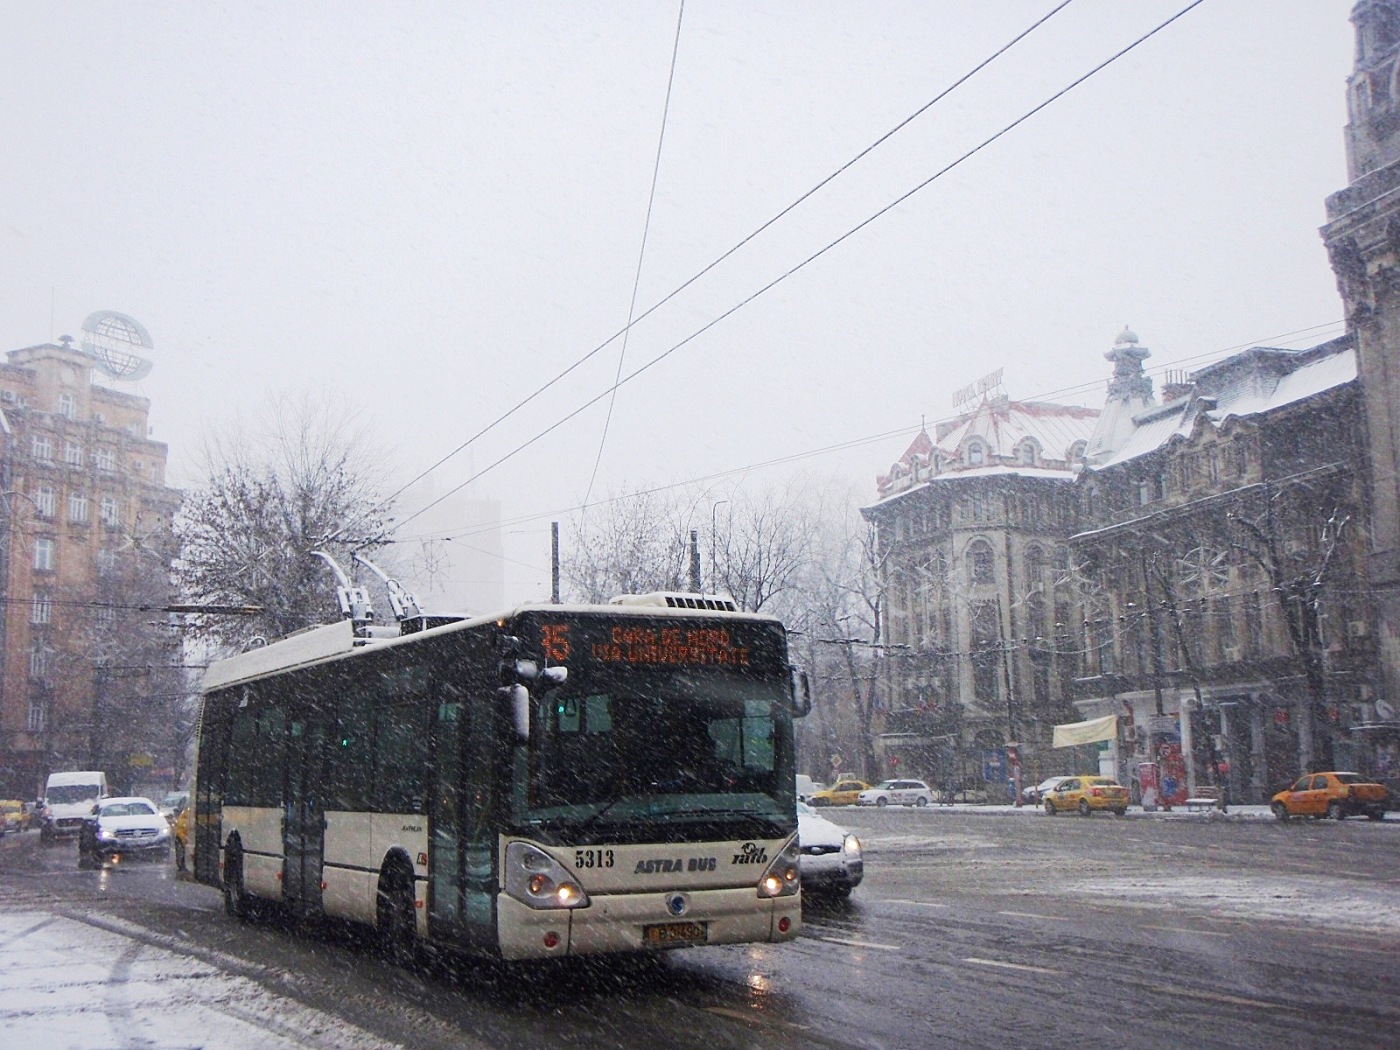 Irisbus Citelis 12T #5313